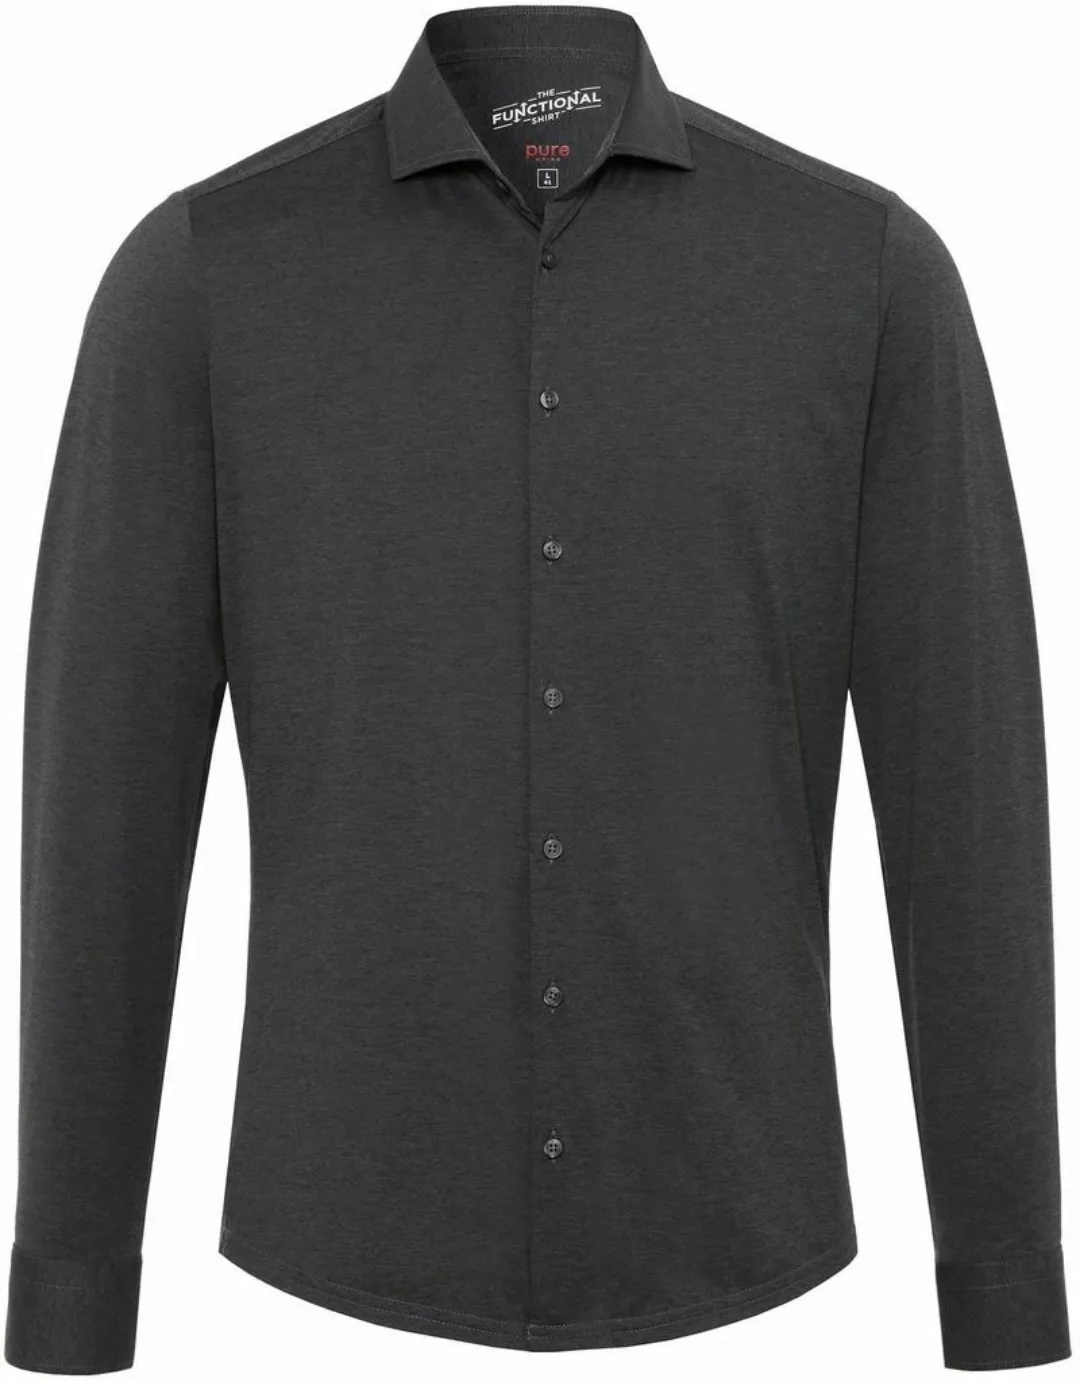 Pure H.Tico The Functional Dunkel Grau Shirt - Größe 39 günstig online kaufen